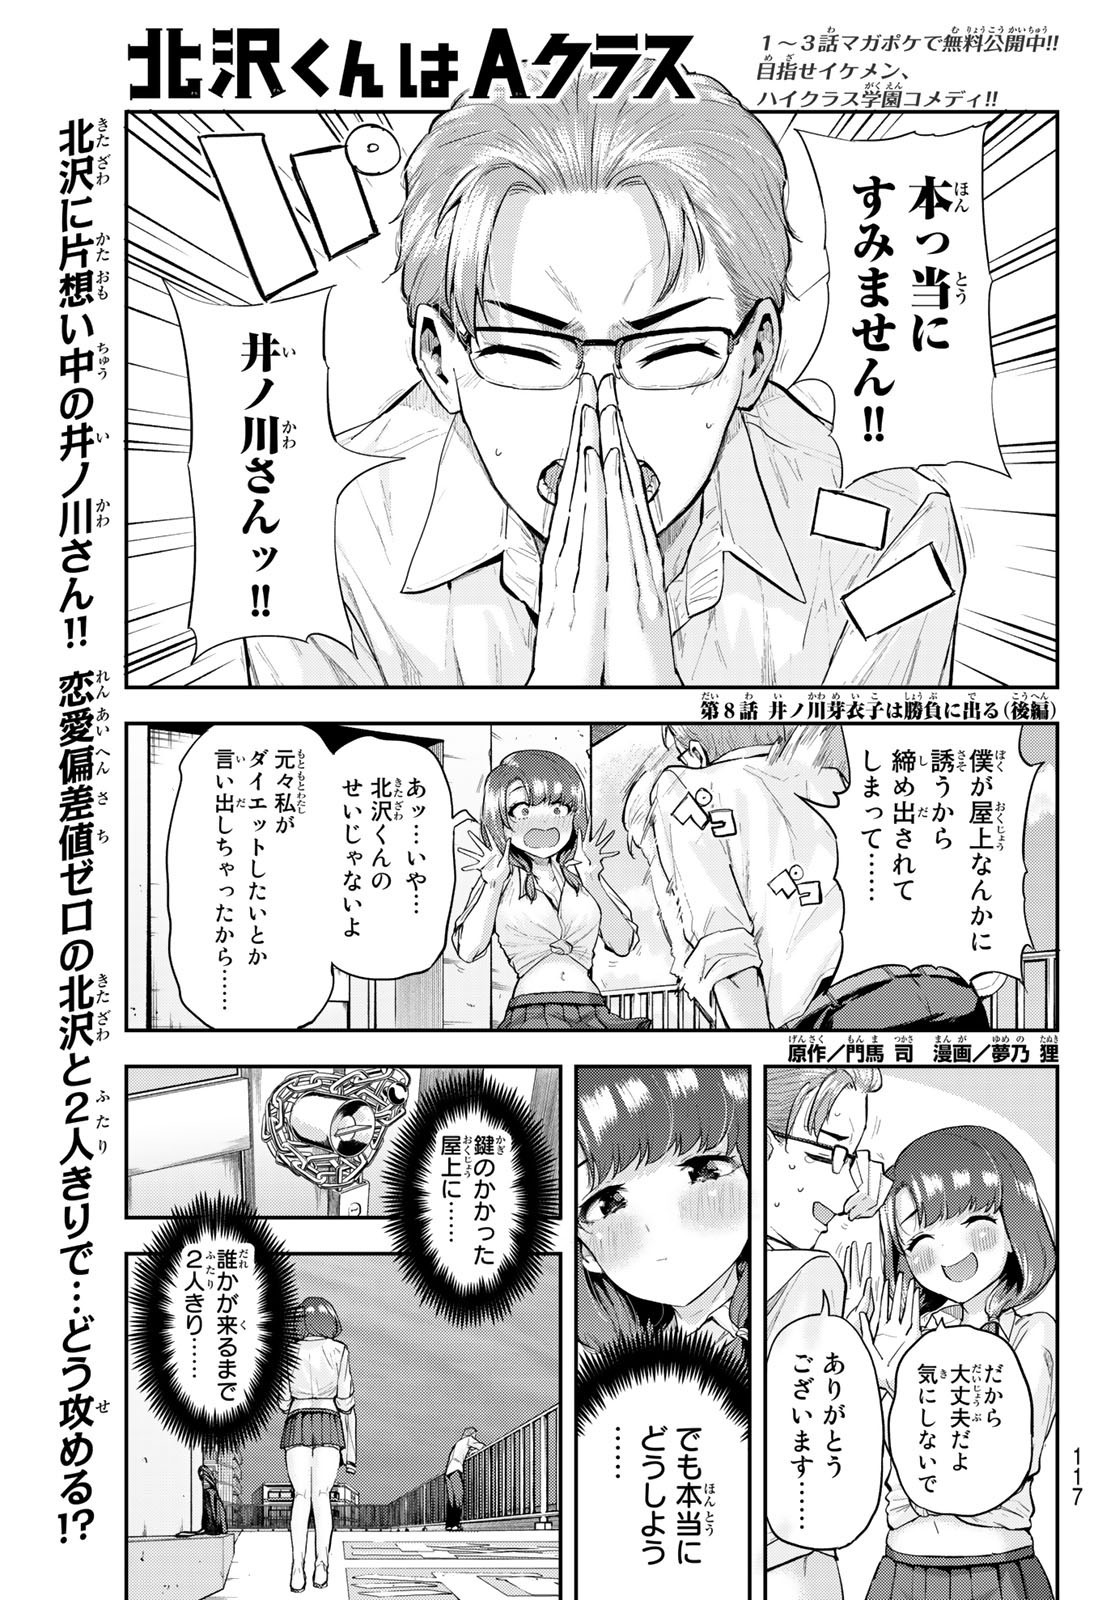 Kitazawa-kun wa A Class - Chapter 008 - Page 1